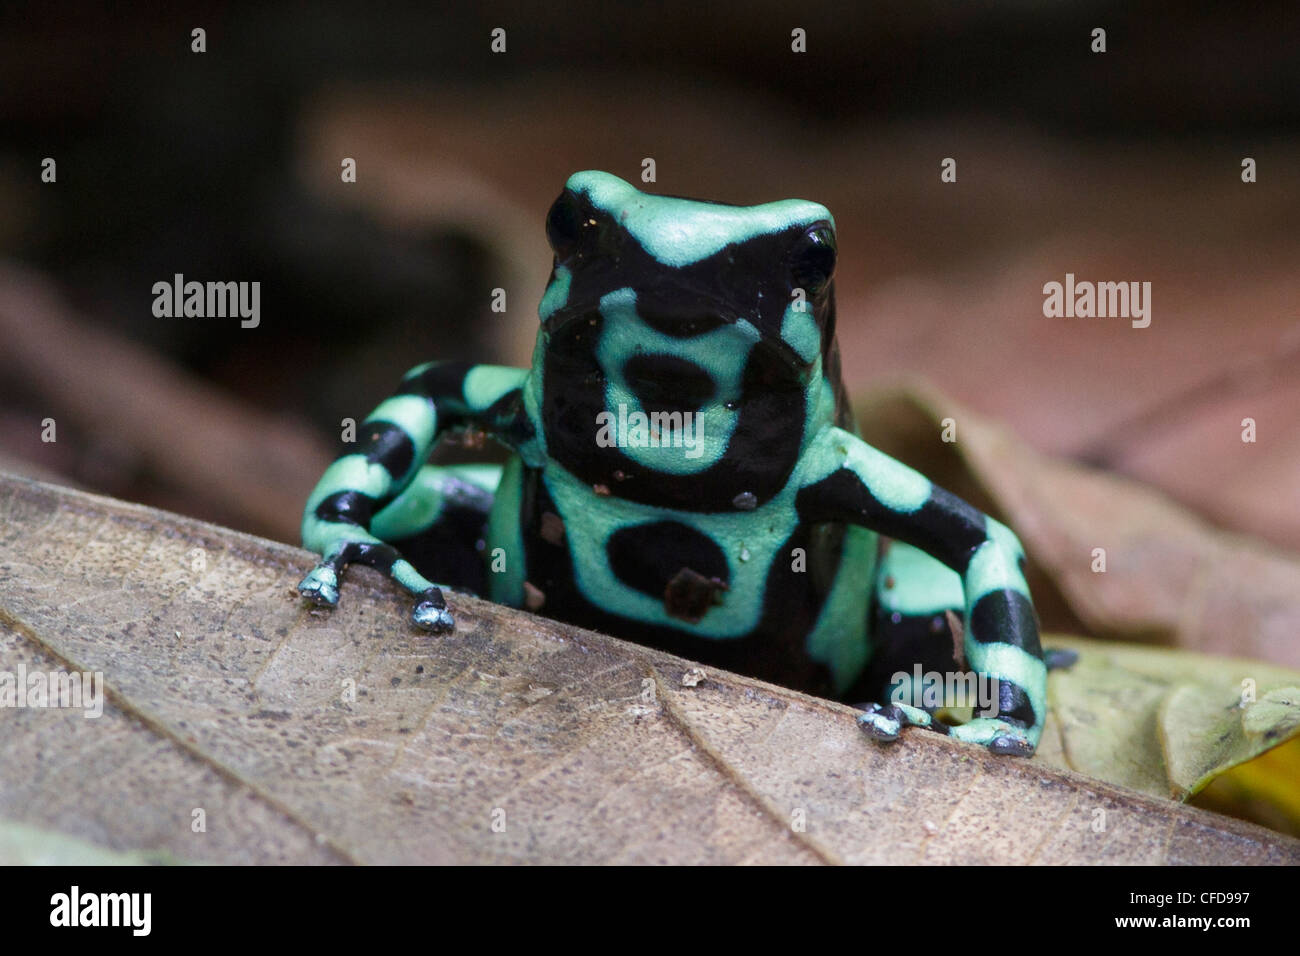 Verde y negro Poison Dart Frog encaramado en la hojarasca en la selva de Costa Rica. Foto de stock